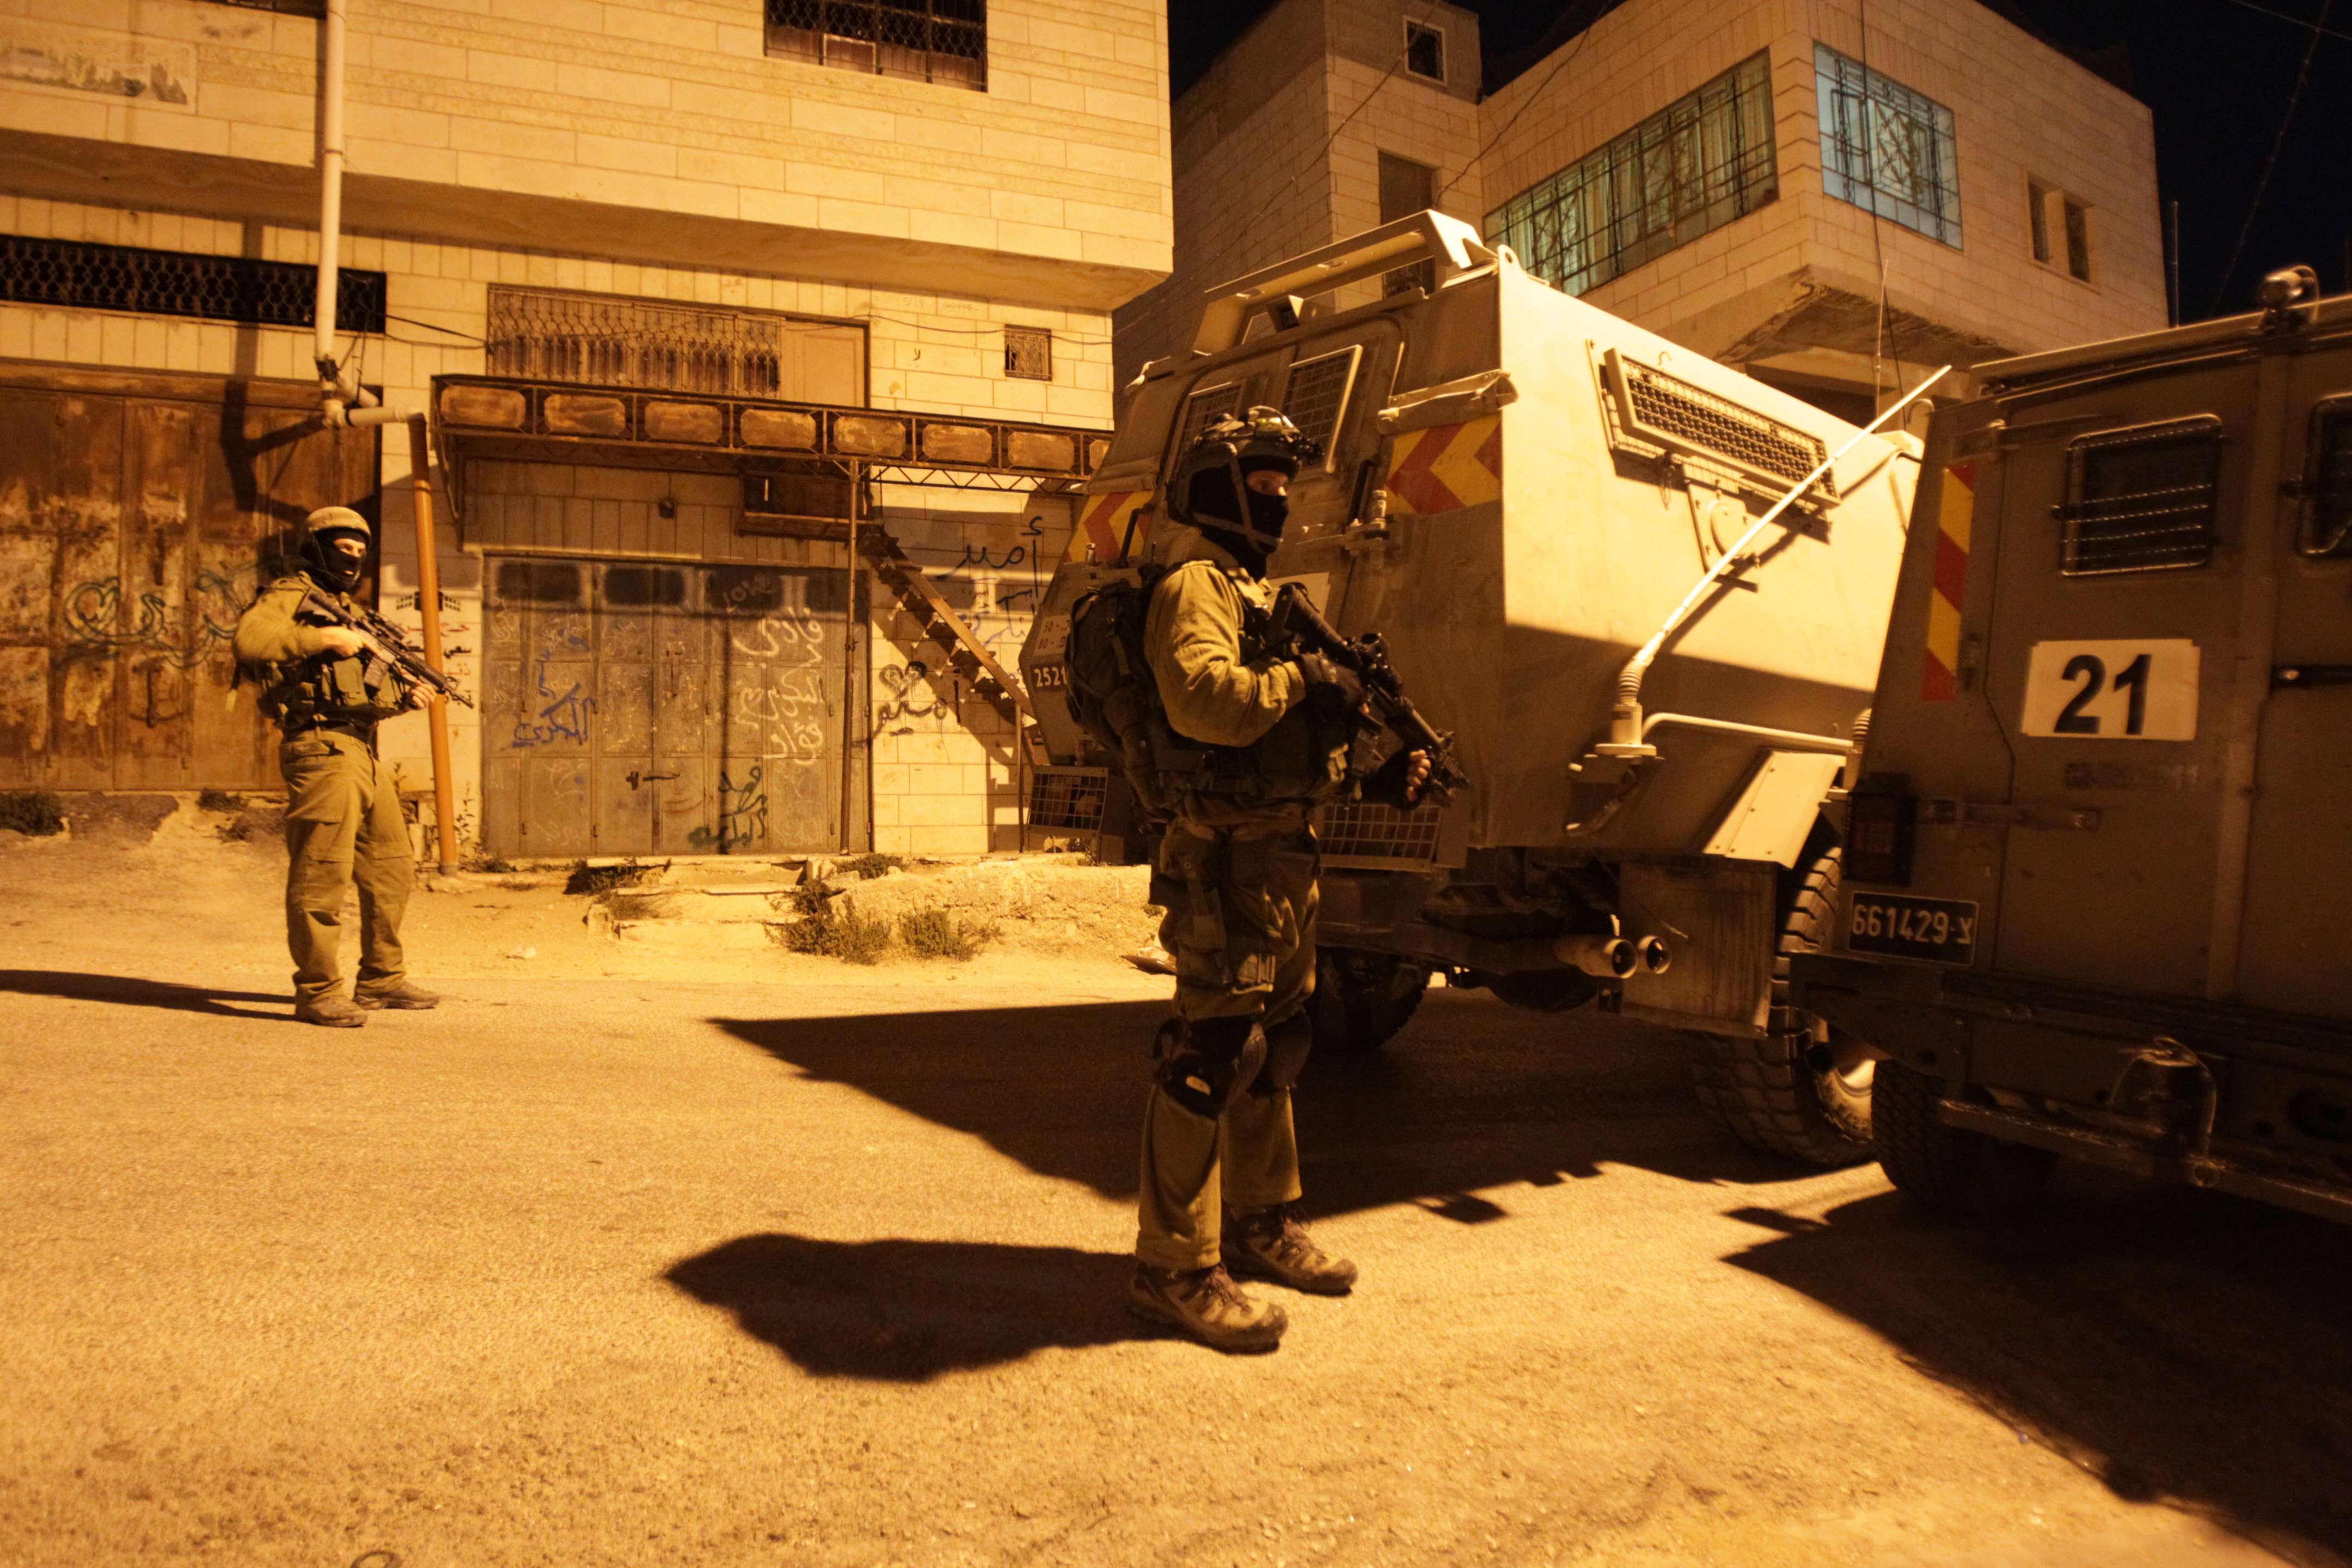  استشهاد شاب فلسطيني وإصابة 3 آخرين خلال محاولة اقتحام مخيم بالضفة الغربية